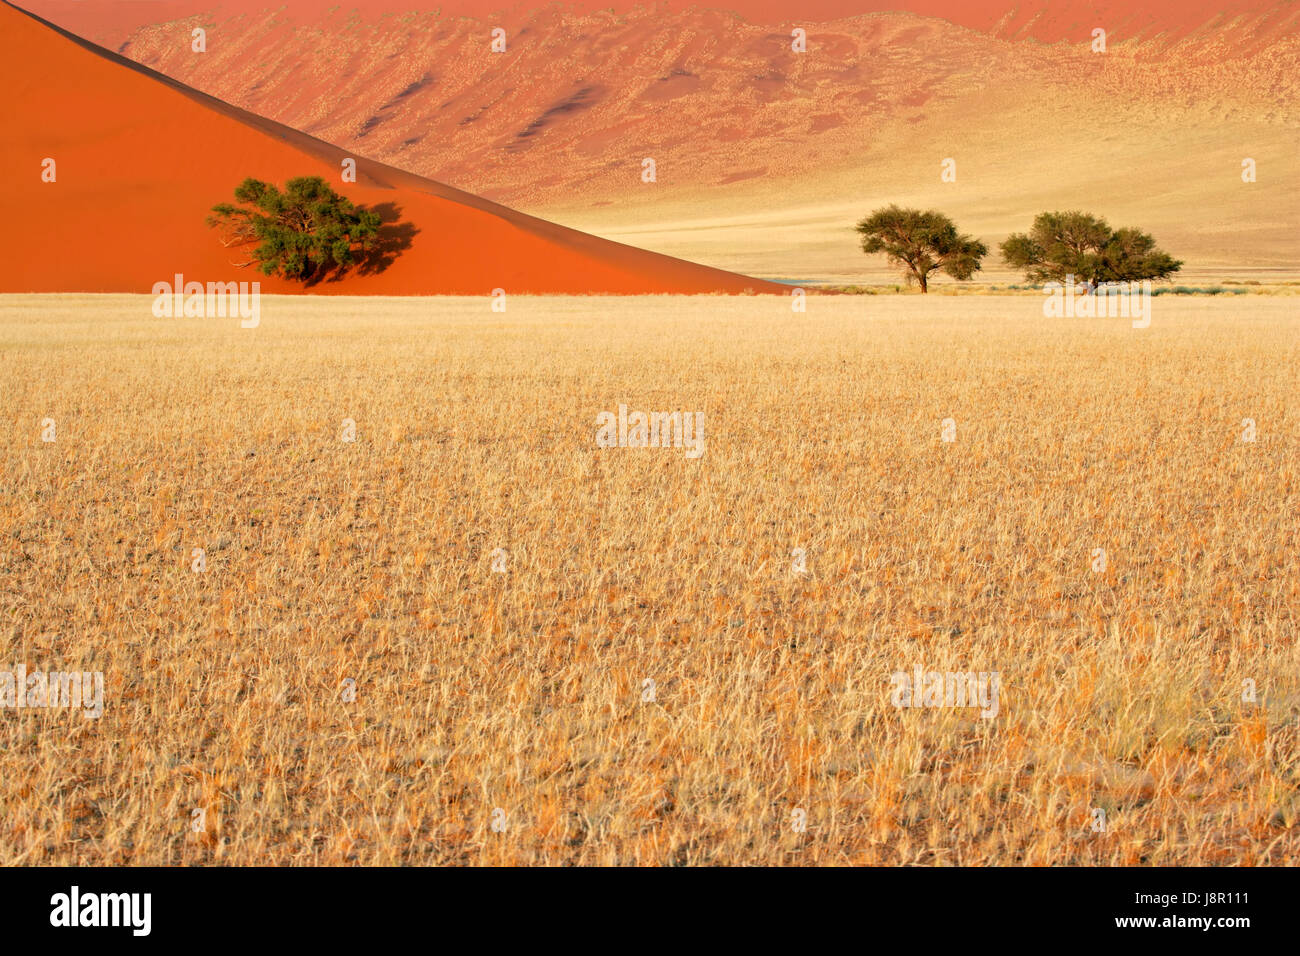 Arbre, désert, désert, graminées, dune, acacia, paysage, paysage, Banque D'Images